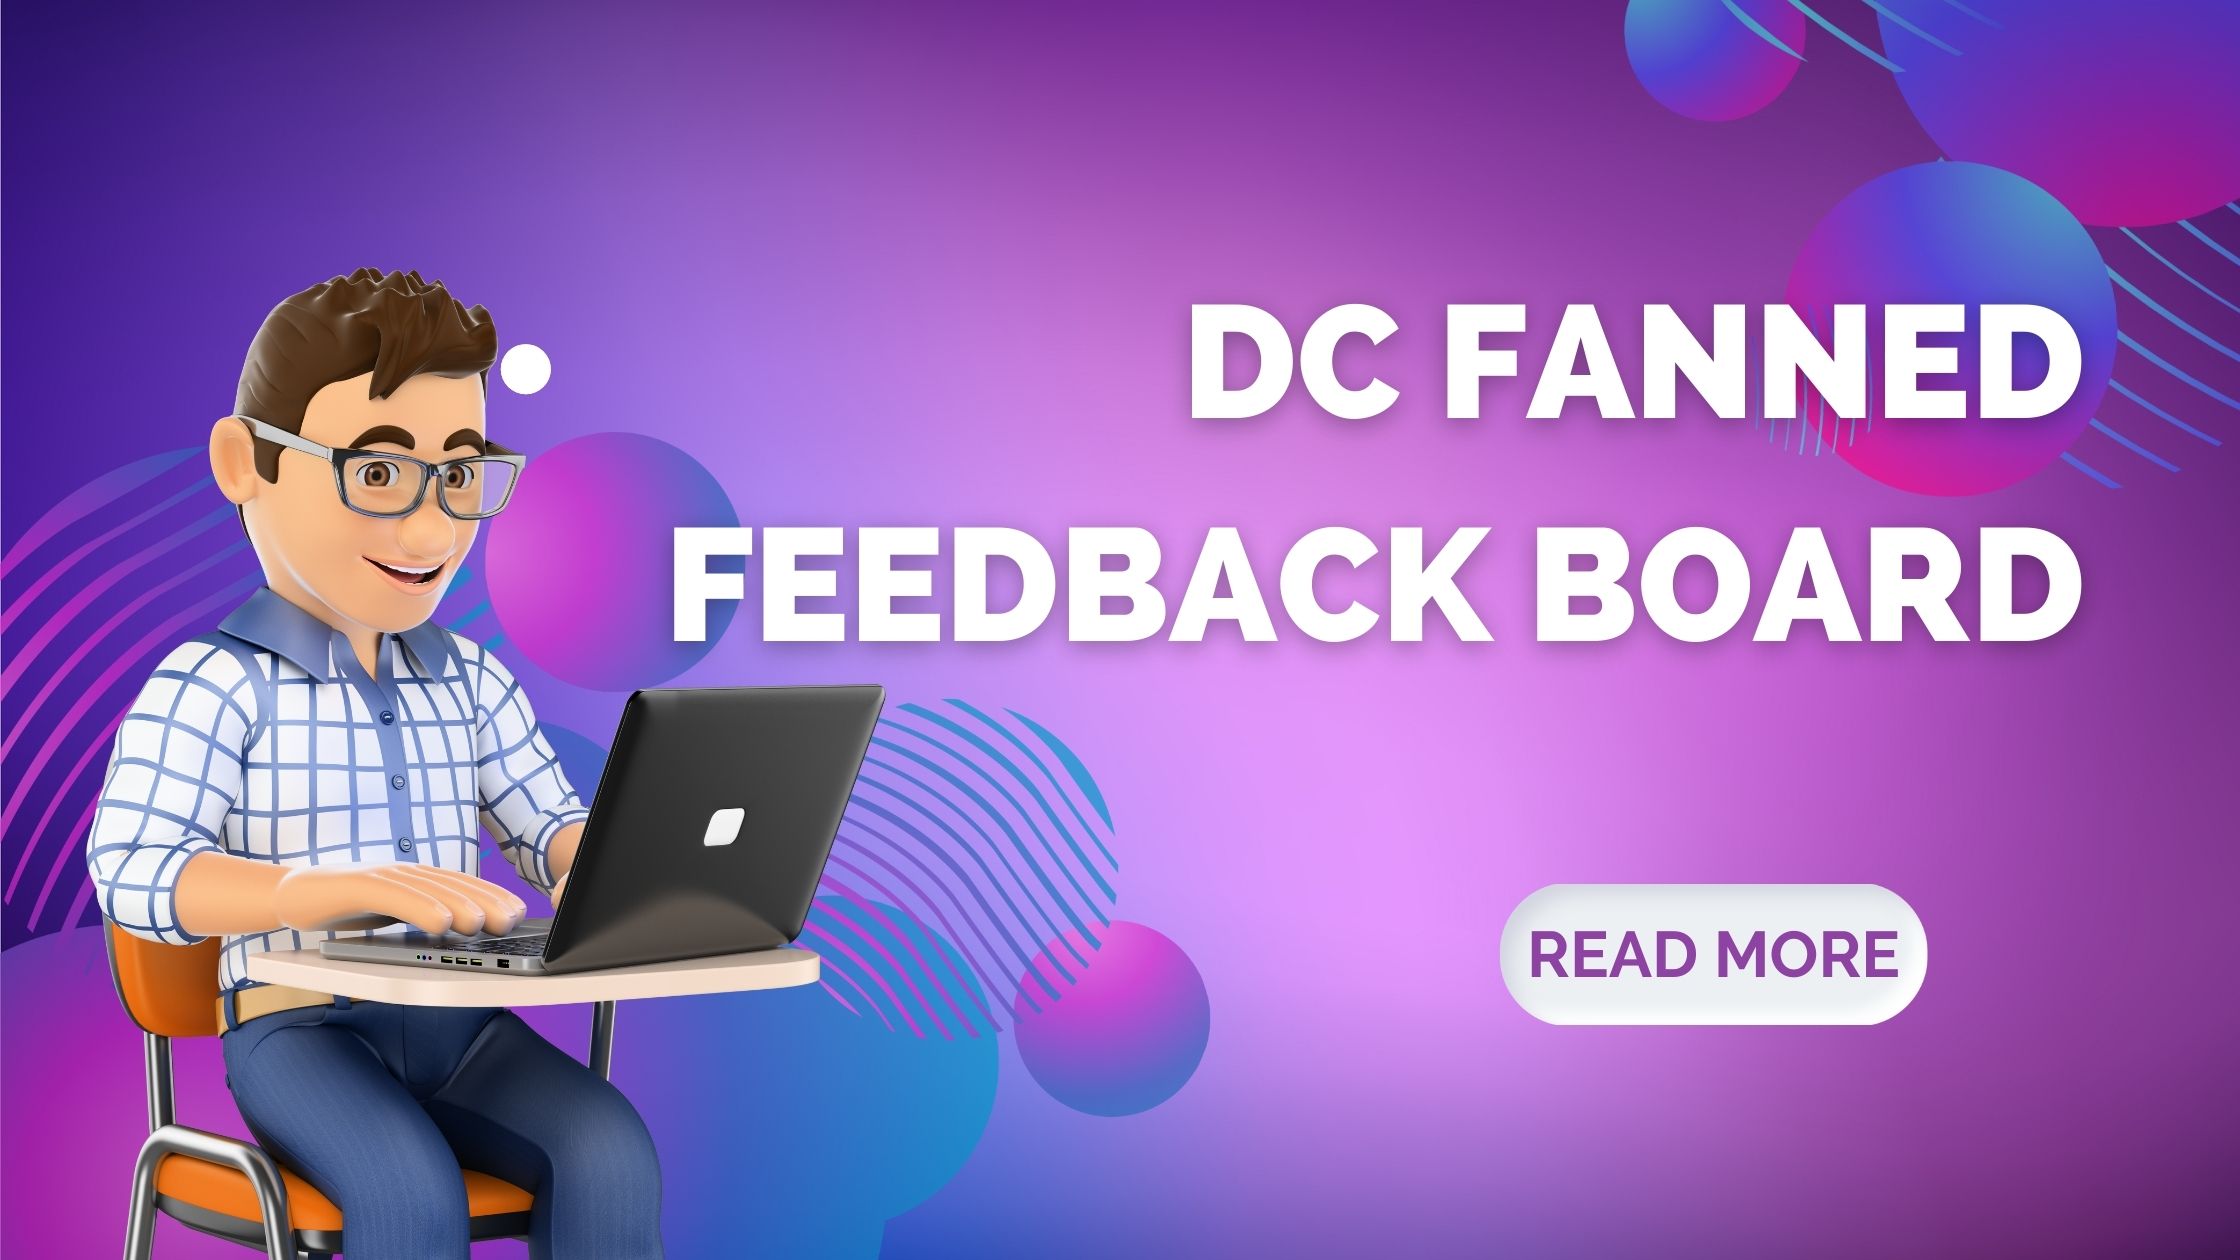 DC Fanned Feedback Board